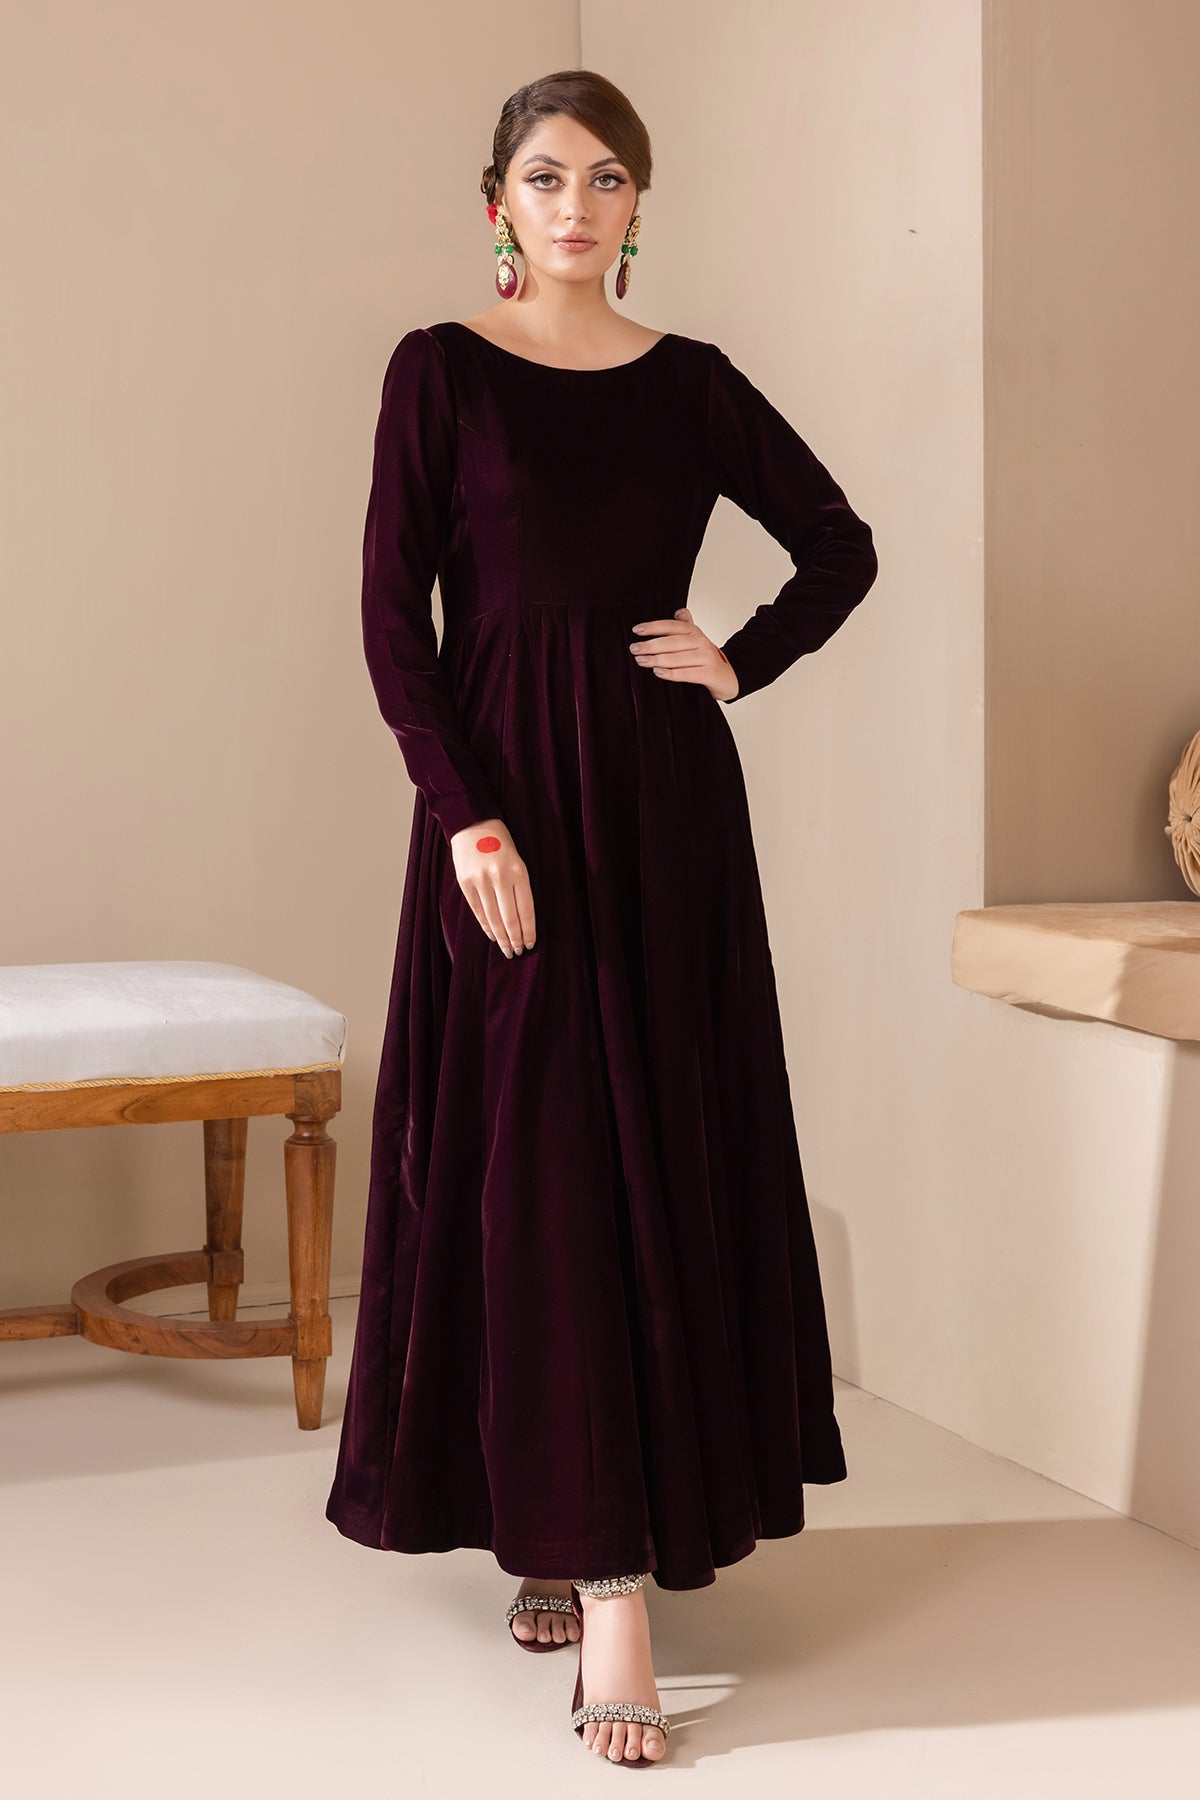 Velvet Gown Design 2023 || Velvet Dress Design || Velvet Dress Ideas #dress  #youtube #trending #yt - YouTube